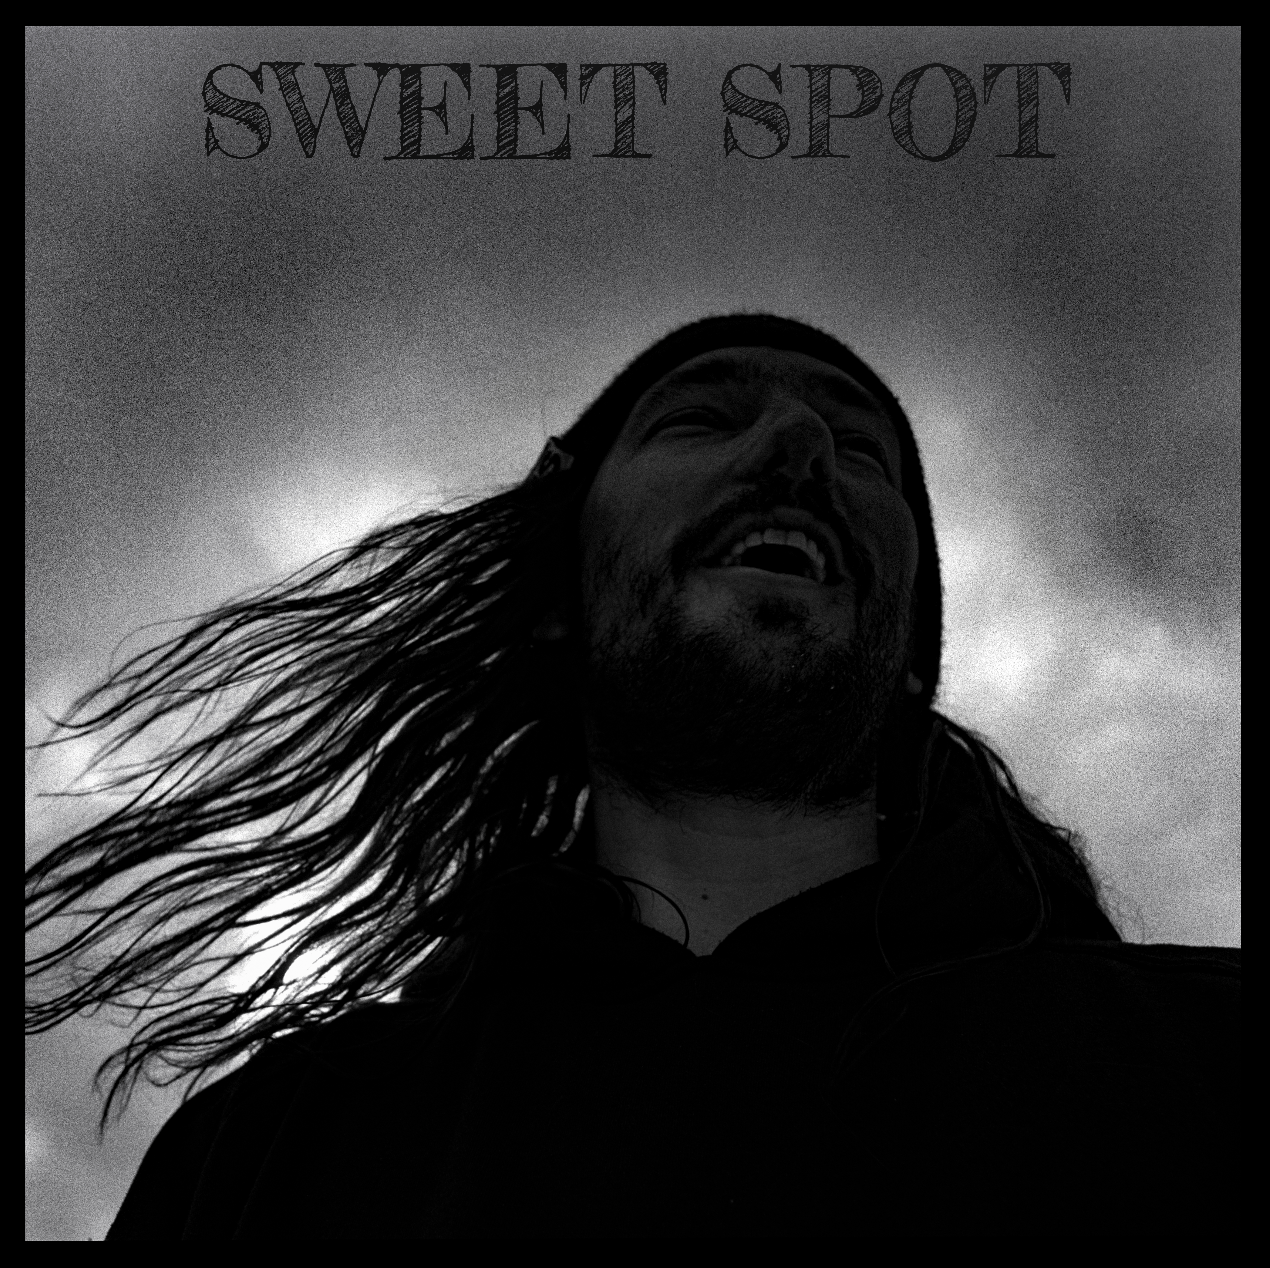 "Sweet spot" Photo art book